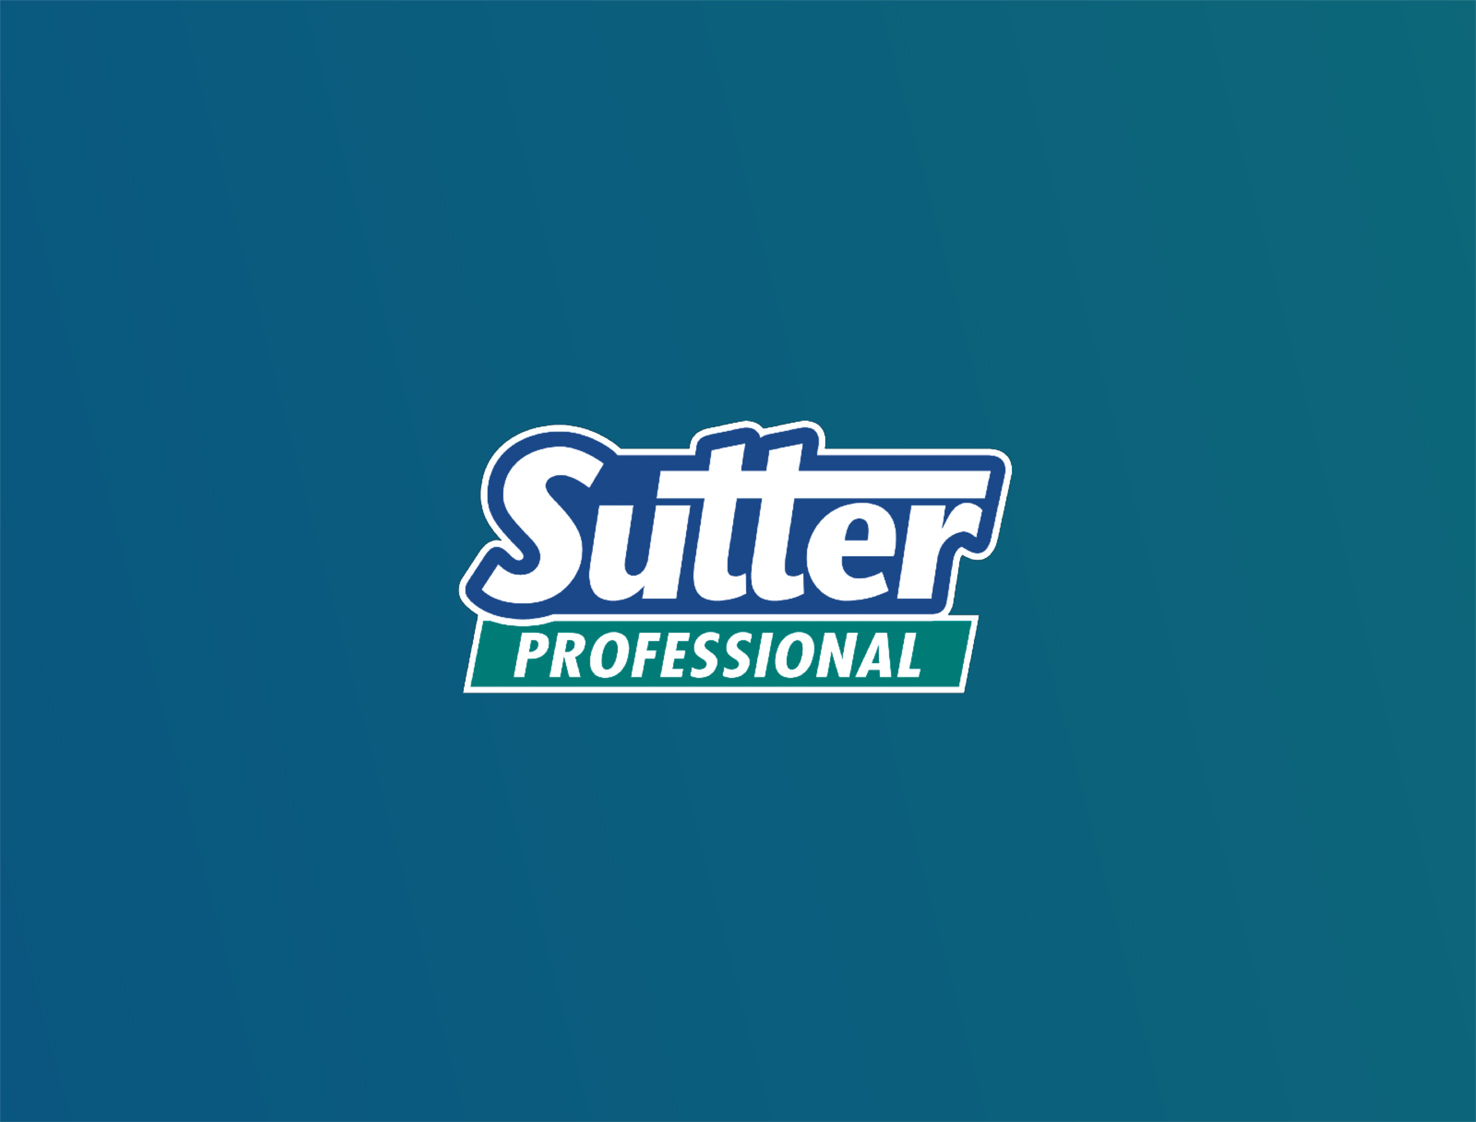 Sutter affida a Tunnel anche la strategia digital di “Sutter Professional”!